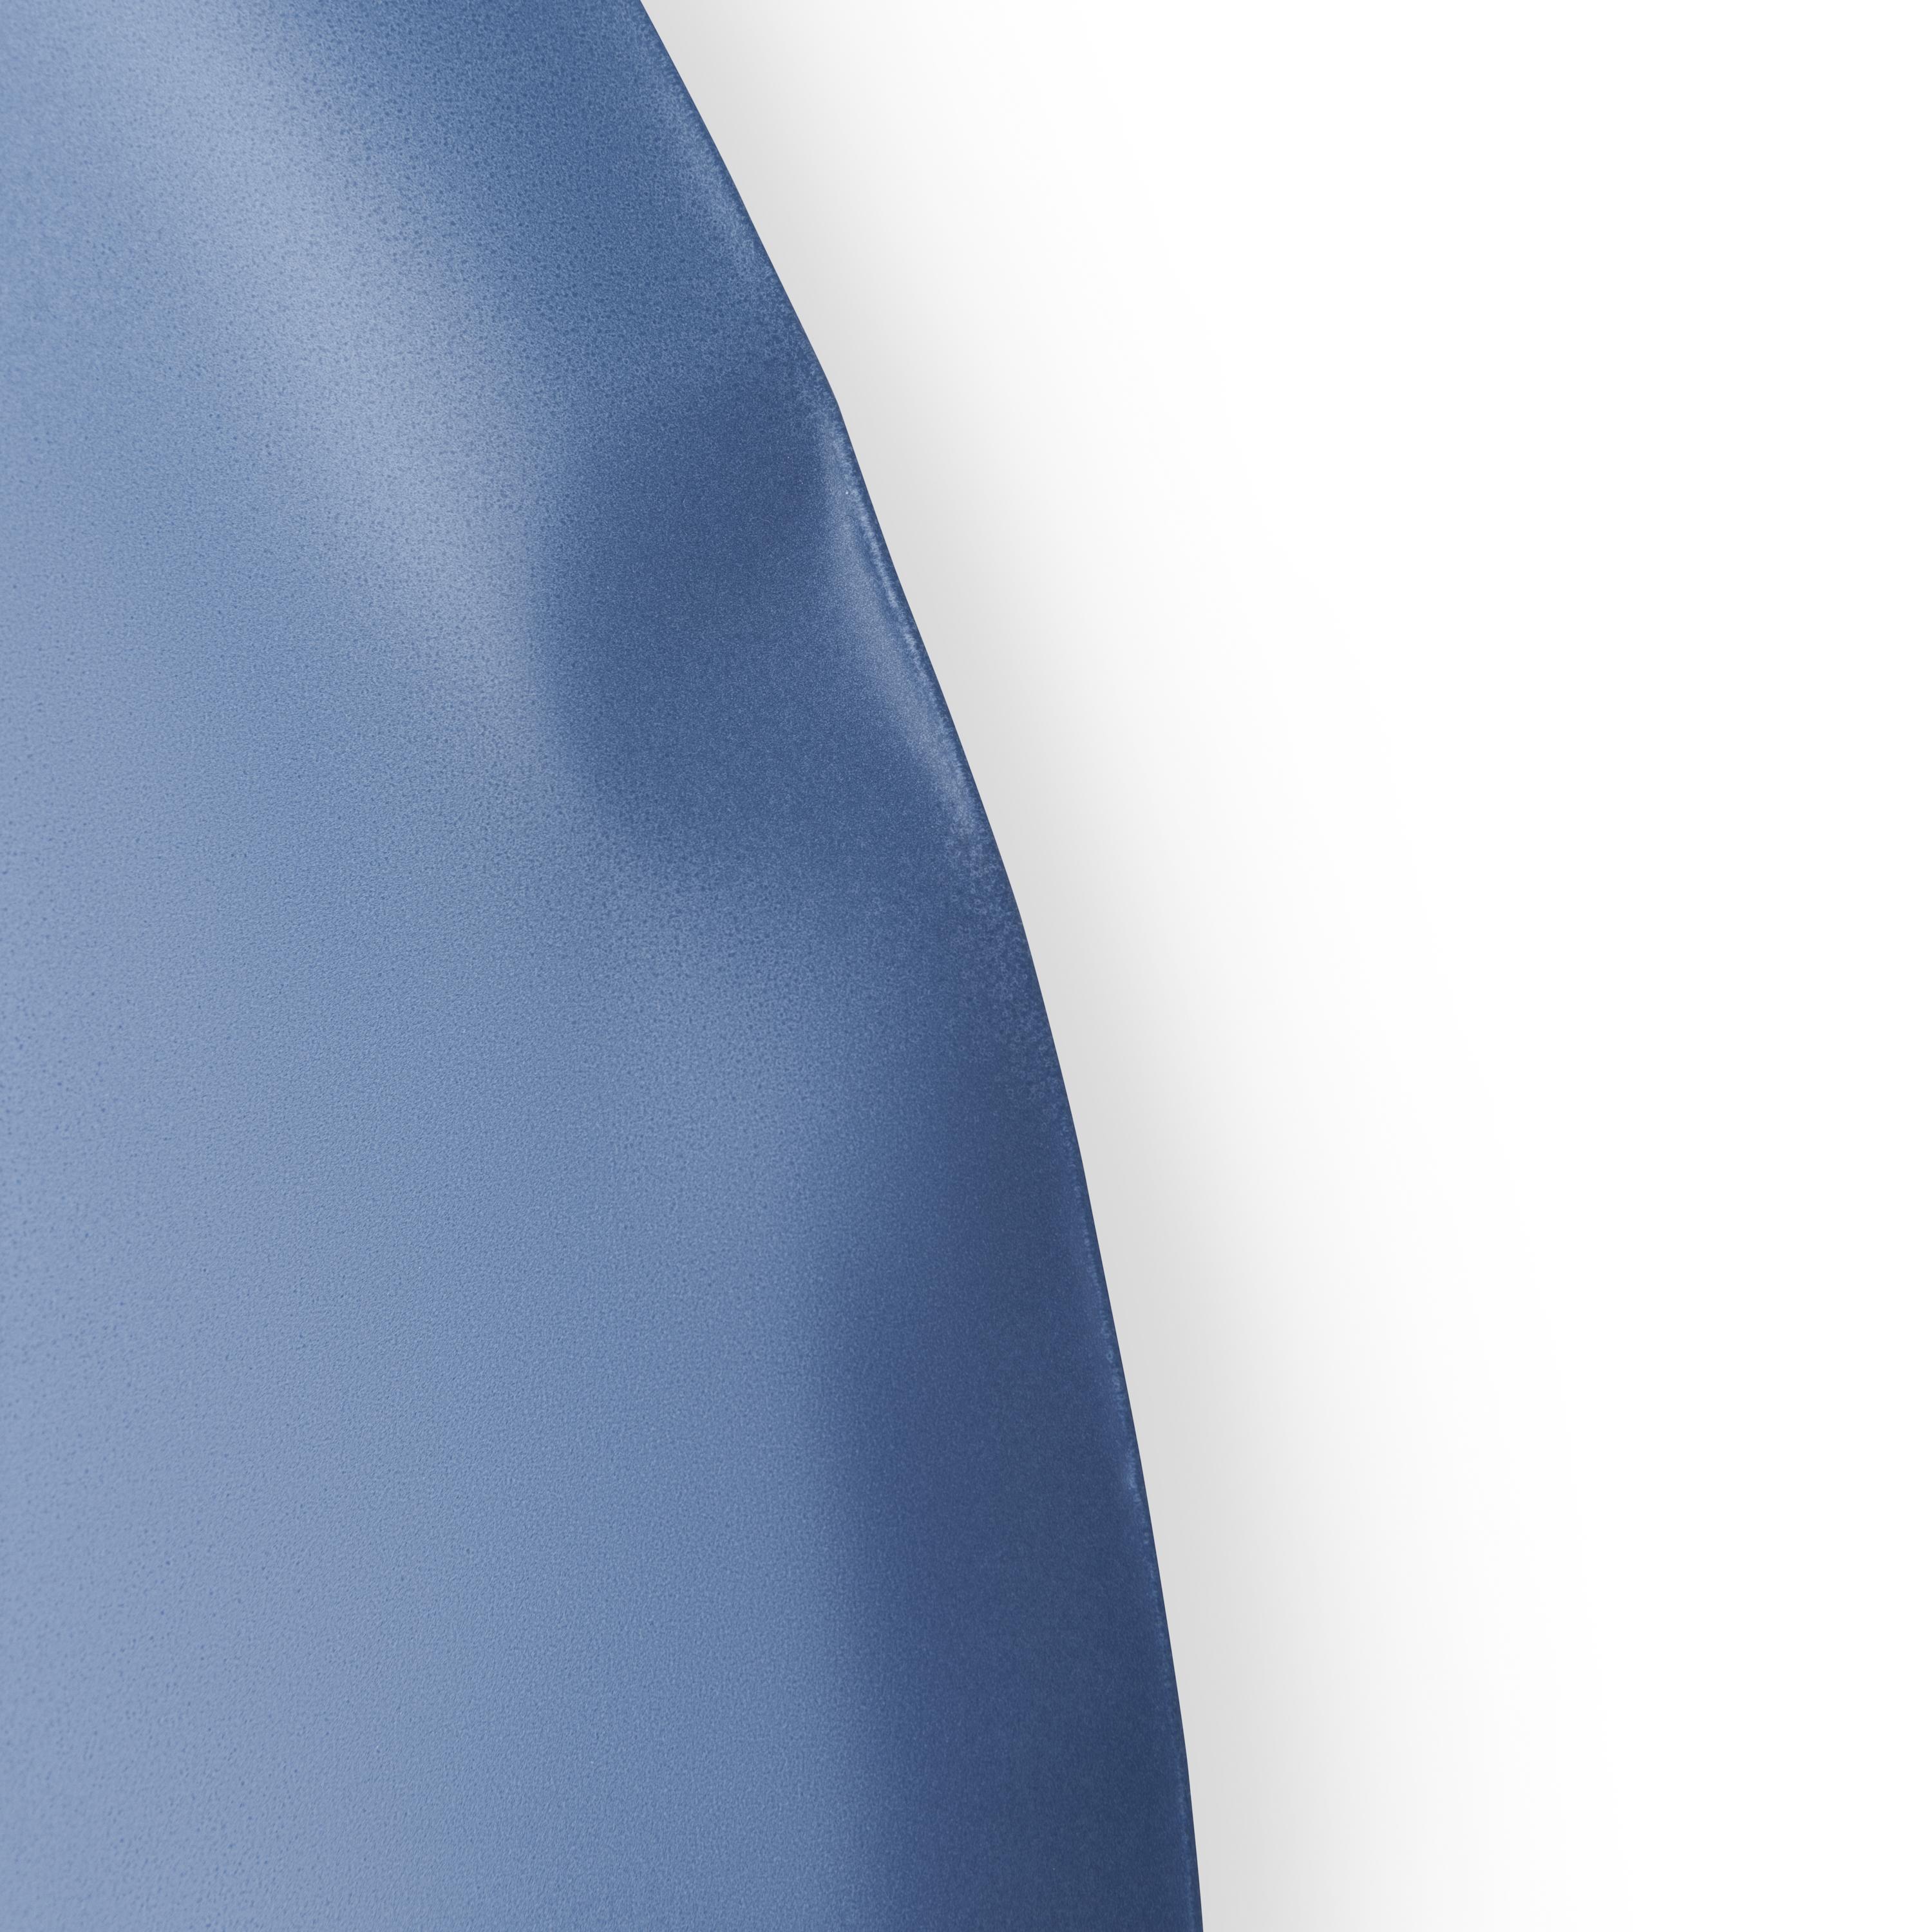 Blauer Matter Tafla O3 Wandspiegel von Zieta
Abmessungen: T6 x B79 x H124 cm 
MATERIAL: Stahl
Verfügbare Ausführungen: Auch in anderen Größen und Farben erhältlich. Bitte kontaktieren Sie uns.

Weiche Stahleindrücke
Die Auseinandersetzung mit dem